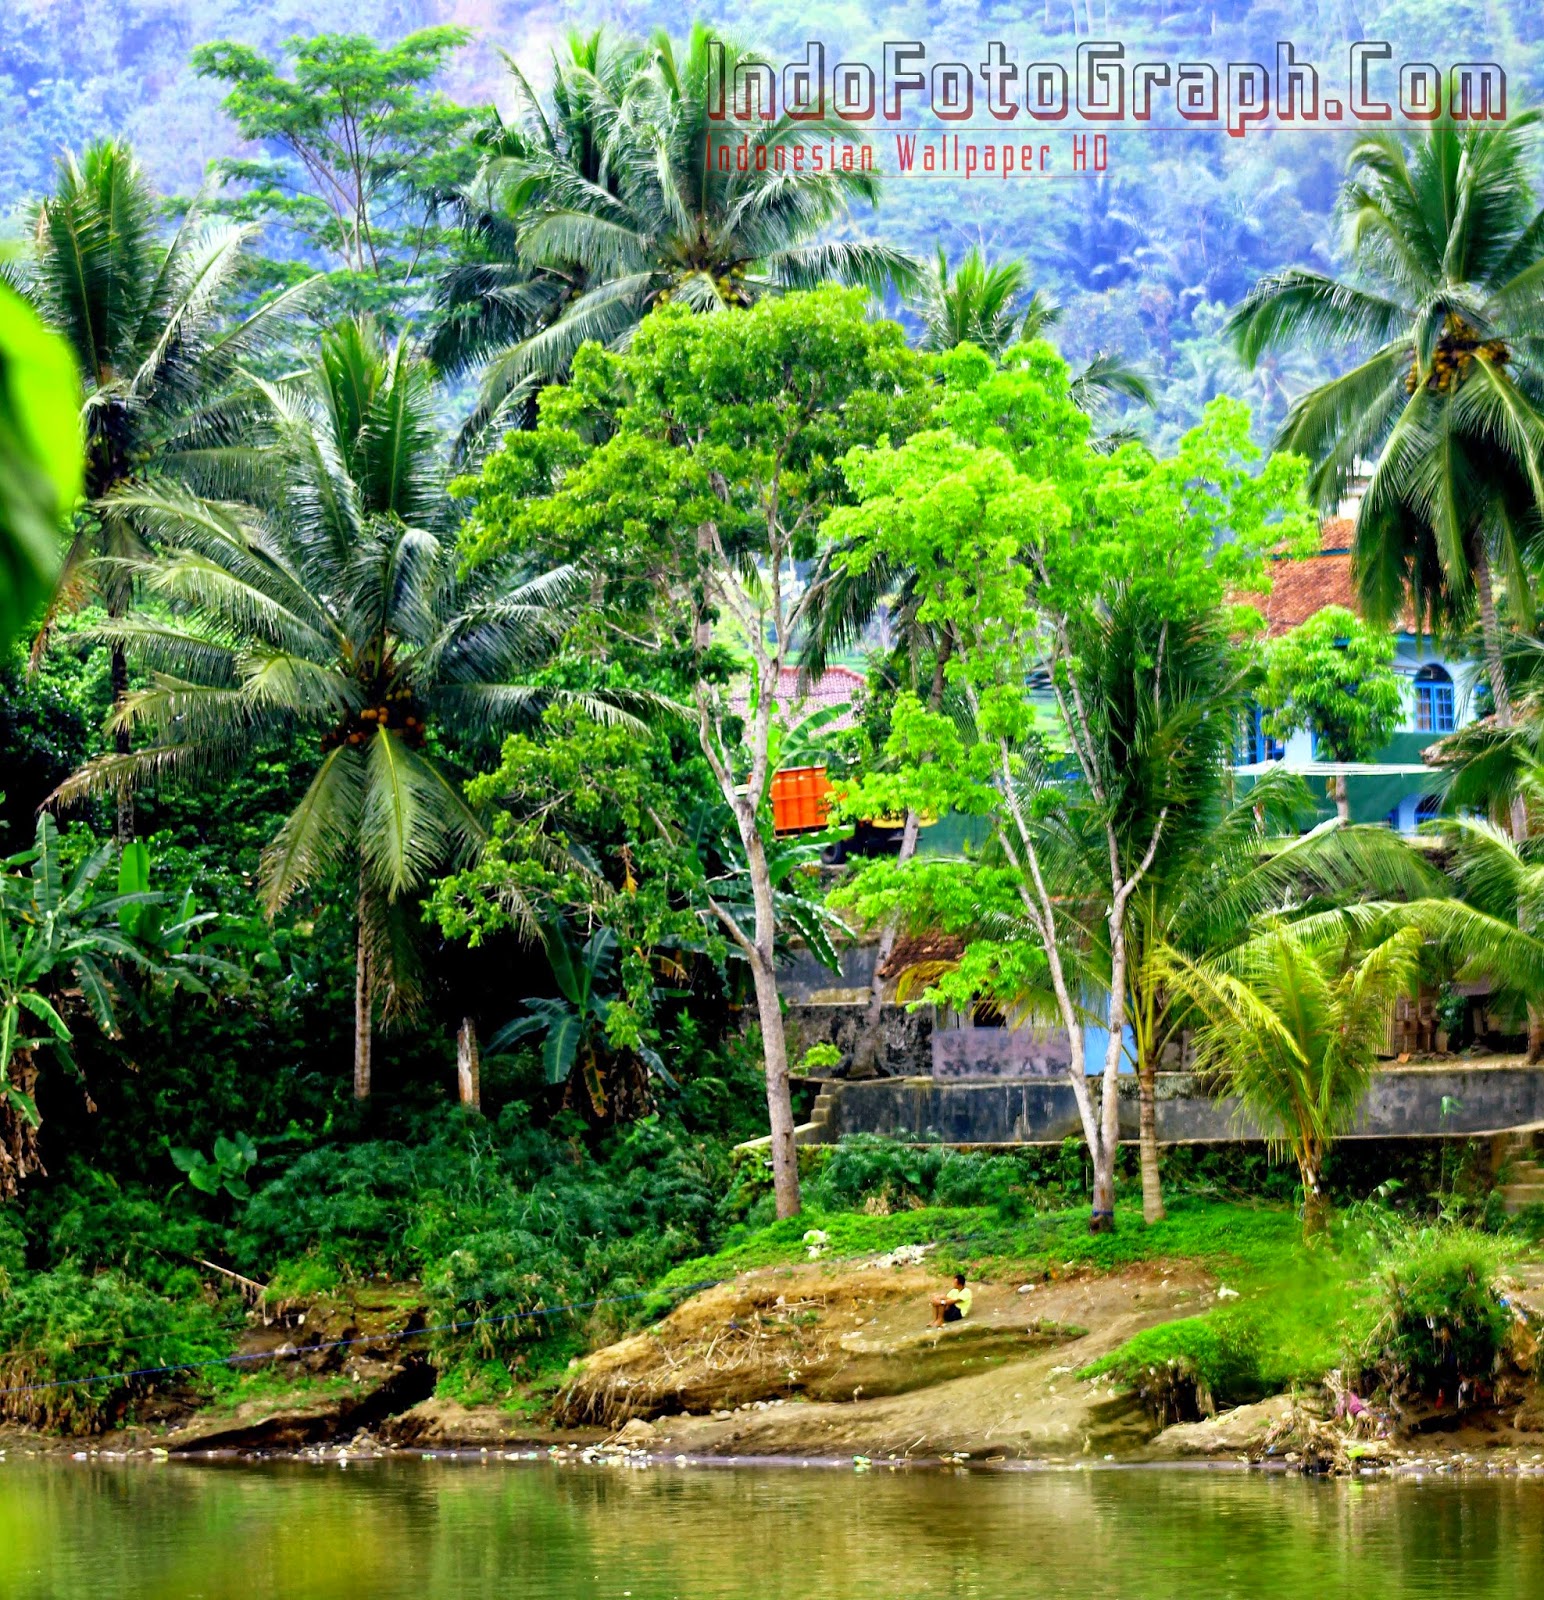 fond d'écran pemandangan indah,paysage naturel,la nature,arbre,jungle,palmier